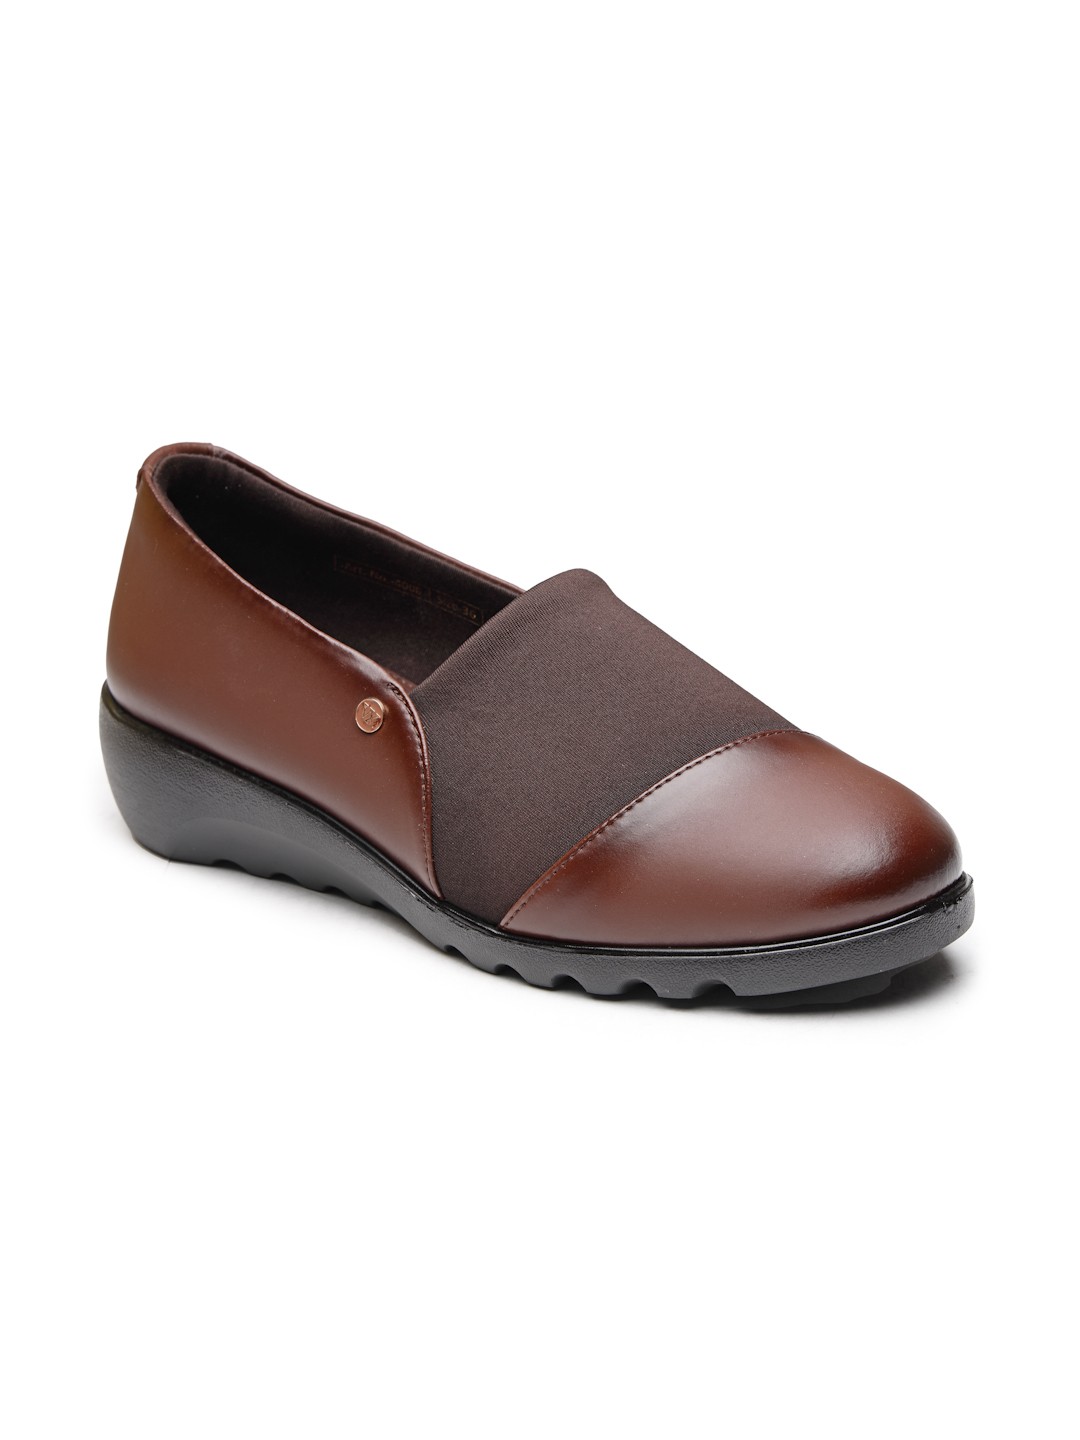 Buy Von Wellx Germany Comfort Women's Brown Casual Shoes Ayla Online in Sohar